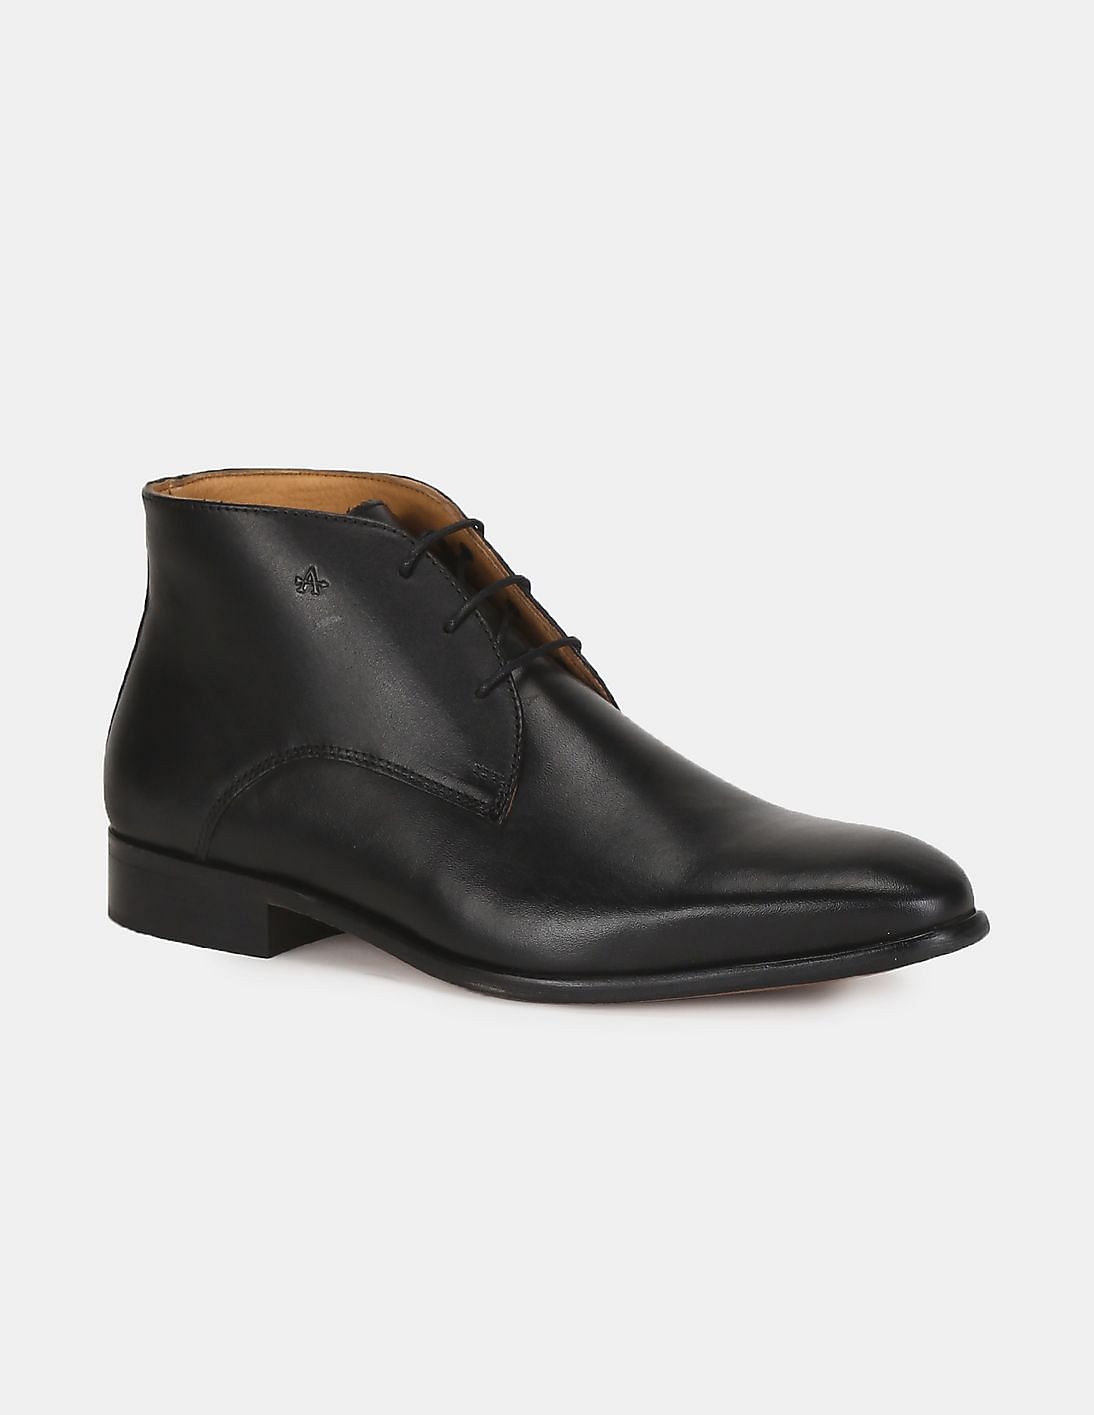 Buy Arrow Men Black Pointed Toe Leather Kinto Chukka Boots - NNNOW.com